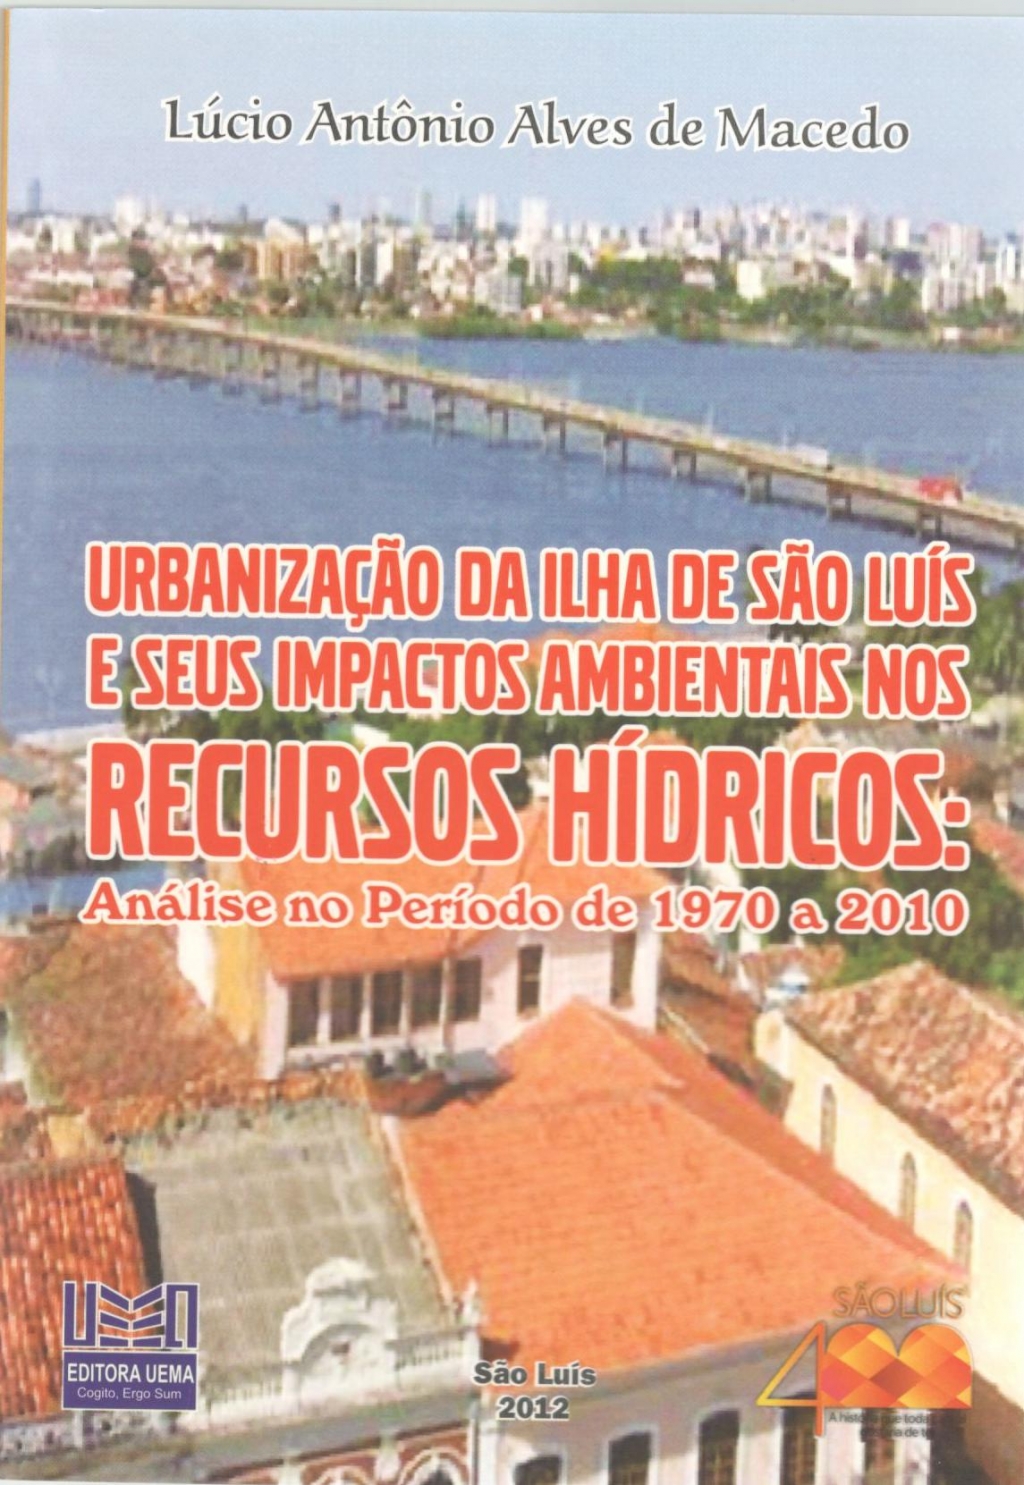 Coleção 400 Anos - Urbanização da ilha de São Luís e seus impactos ambientais nos recursos hídricos: Análise no período de 1970 a 2010